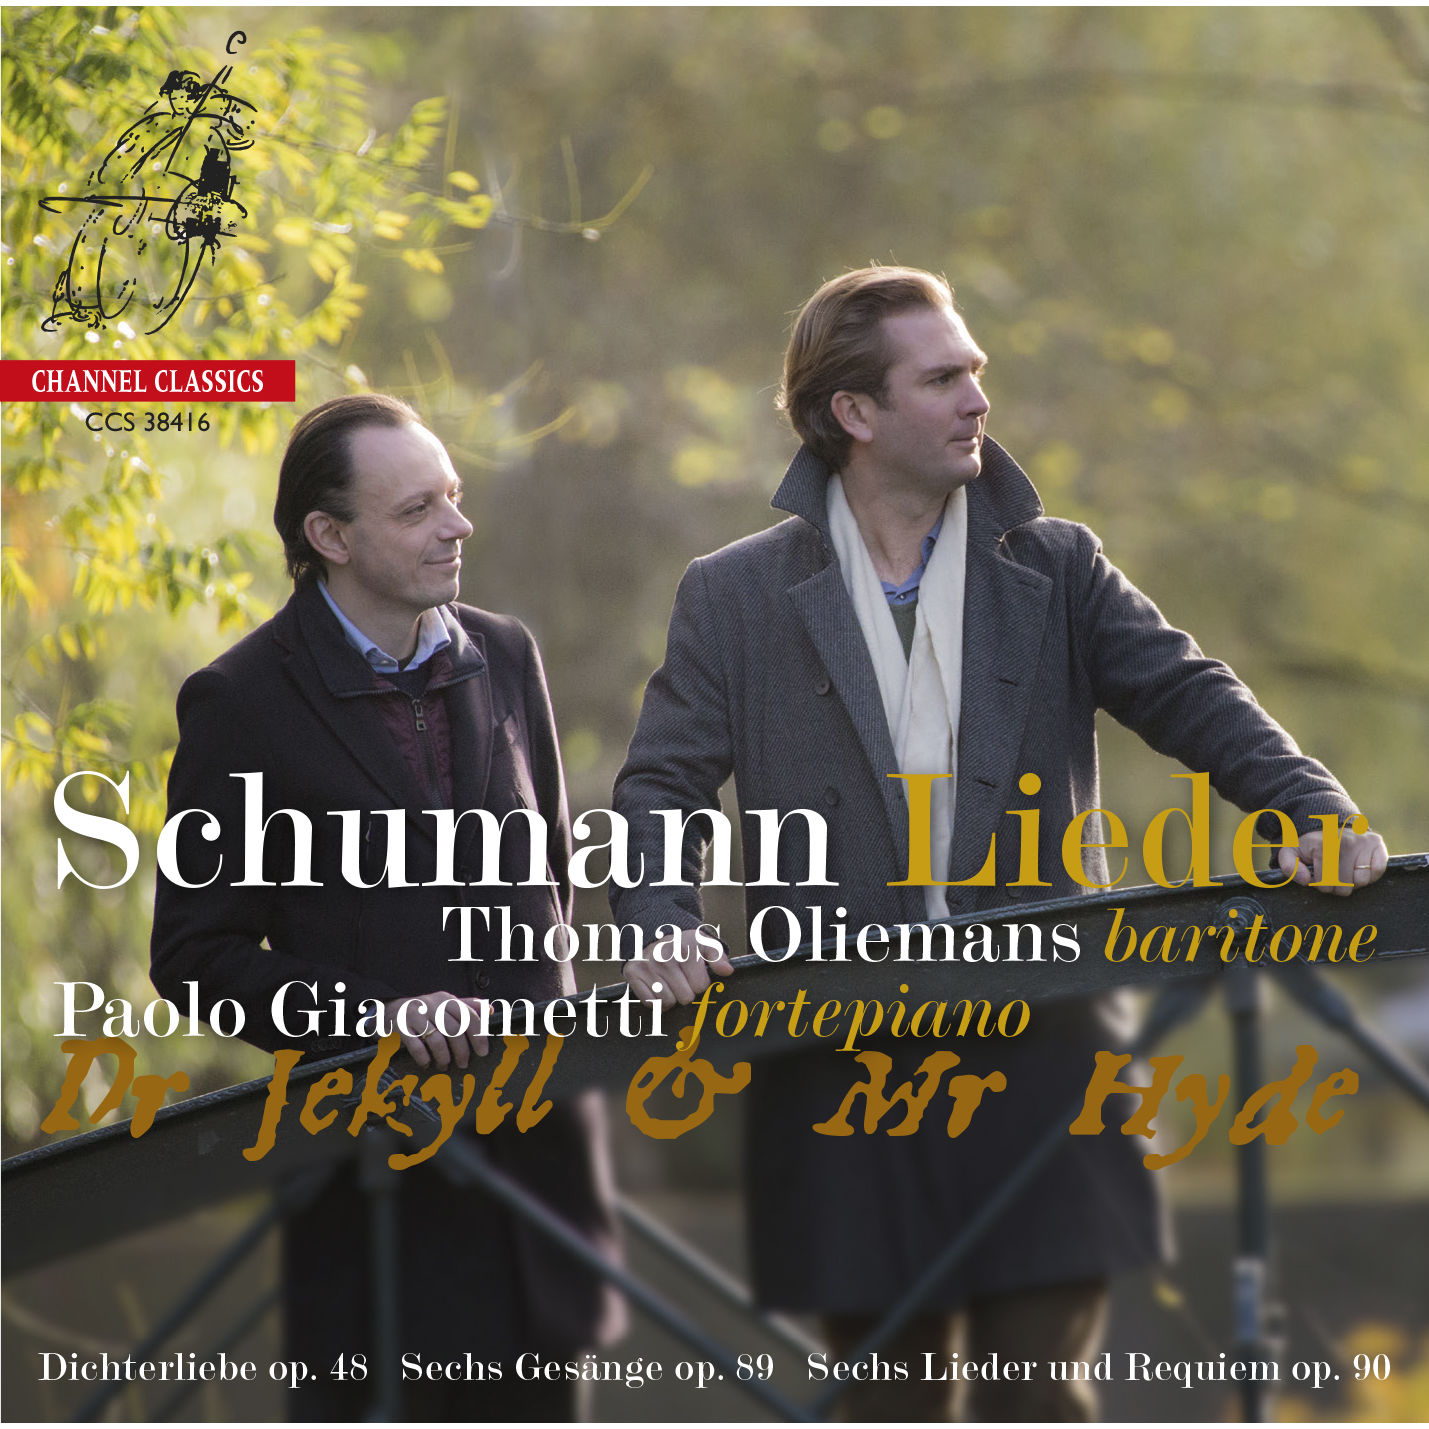 Thomas Oliemans – Dr Jekyll & Mr Hyde – Schumann- Lieder